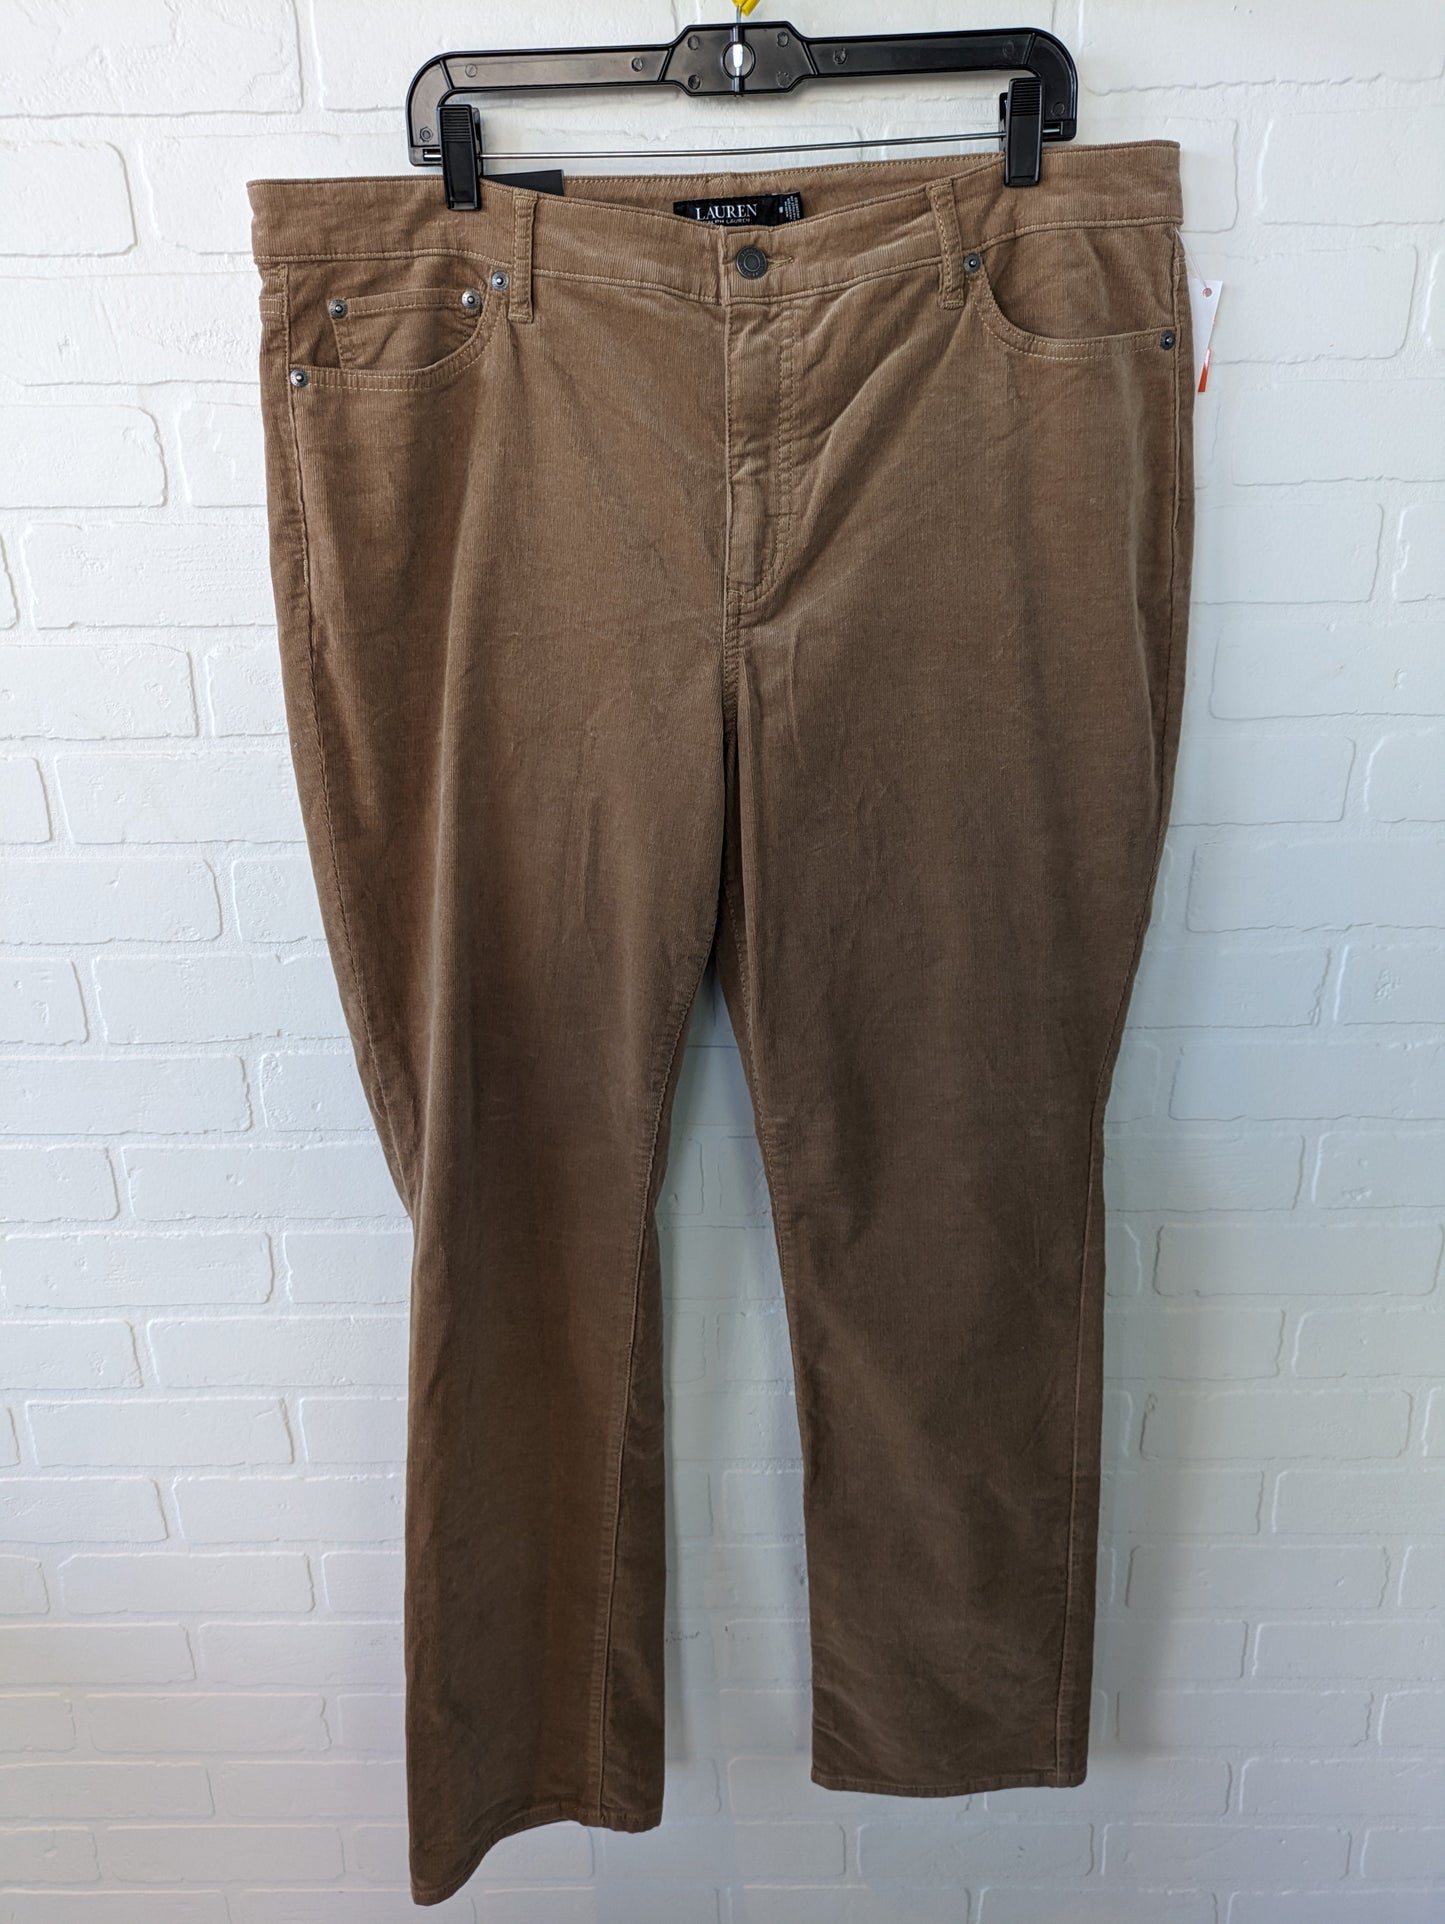 Pants Corduroy By Lauren By Ralph Lauren  Size: 18